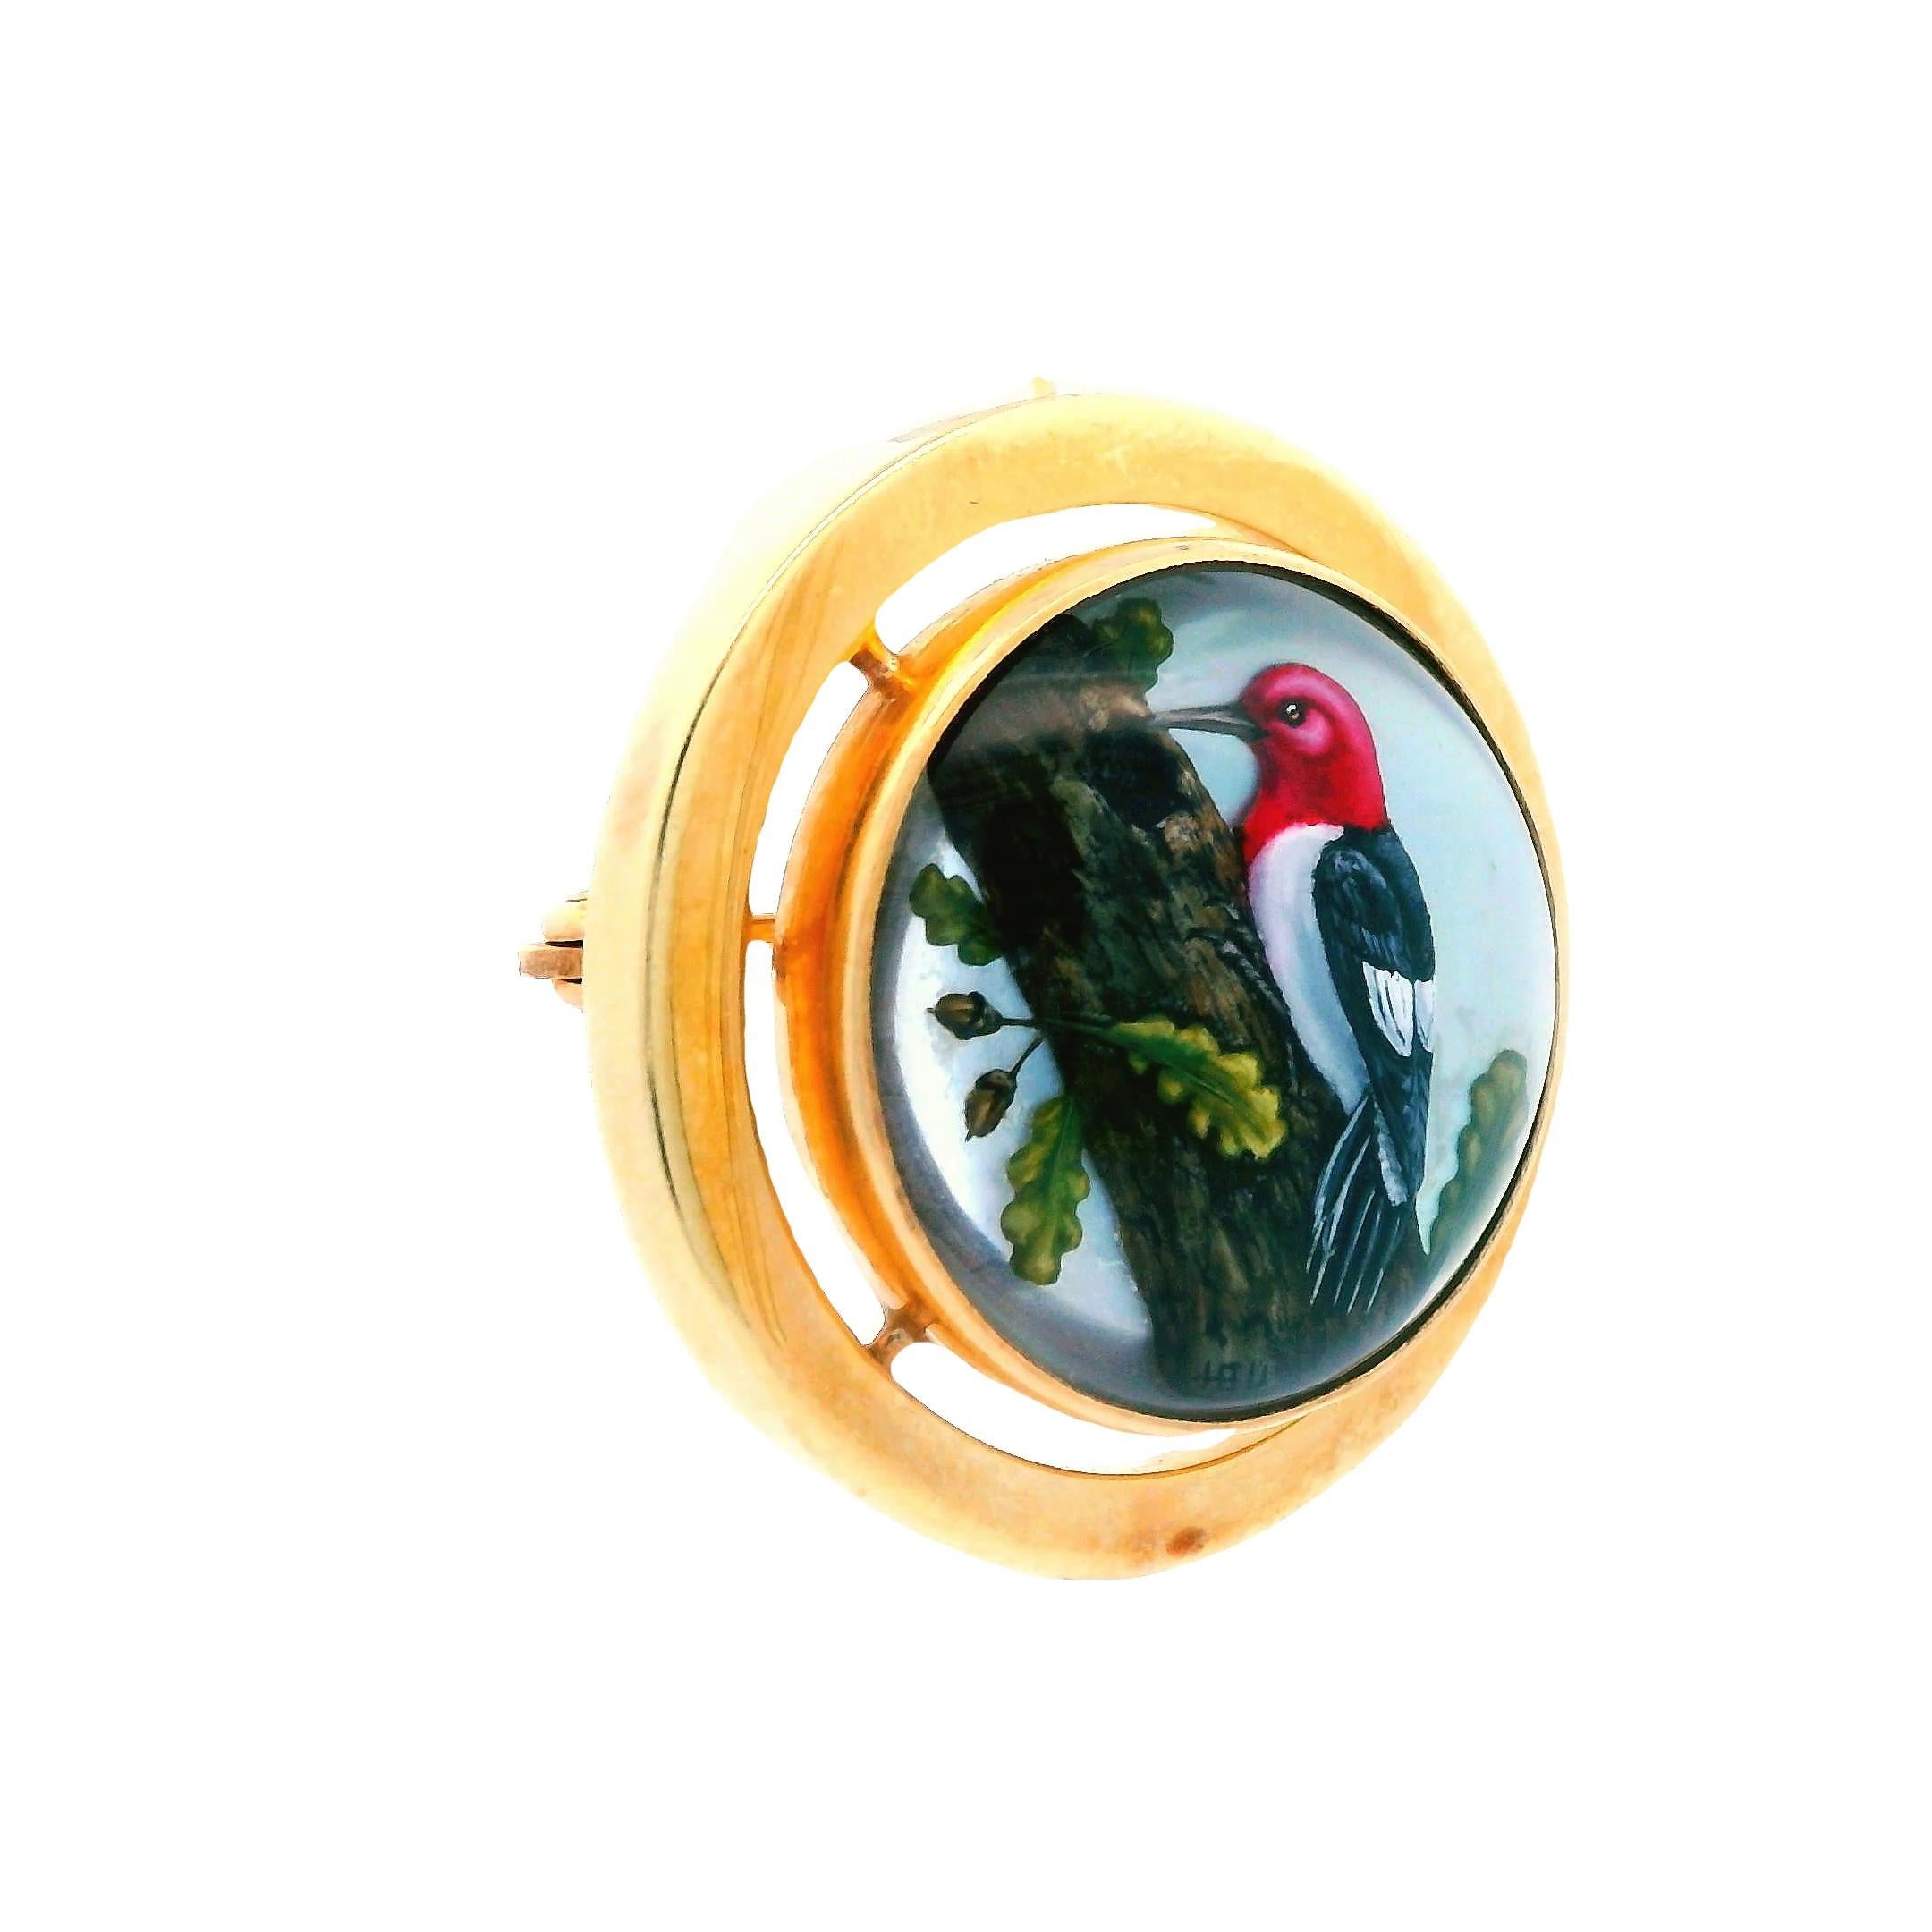 Ce superbe pin/pendentif datant de 1980 est réalisé en or jaune 14k et présente un joli oiseau en cristal. Cette épingle utilise l'espace négatif pour donner un aspect flottant, ce qui donne au cristal de l'oiseau une apparence de flottement libre